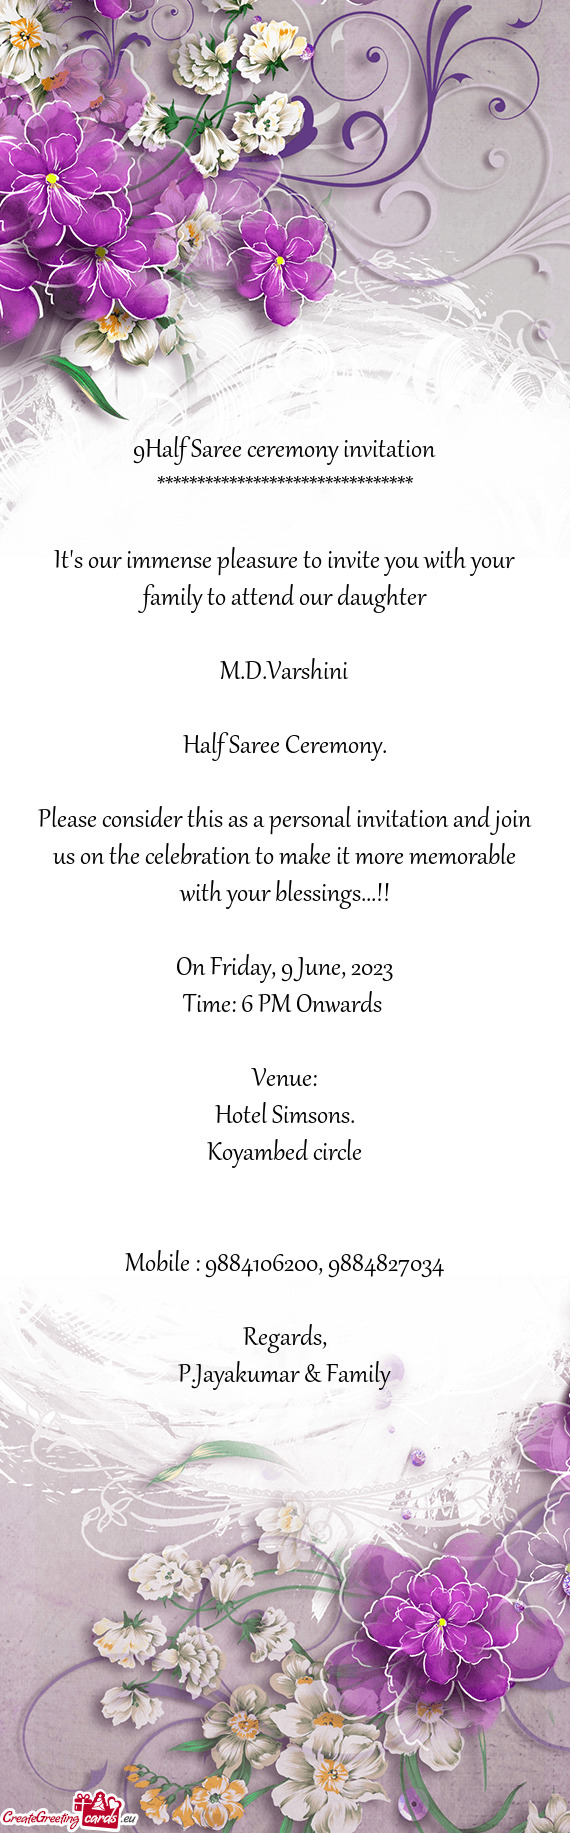 9Half Saree ceremony invitation